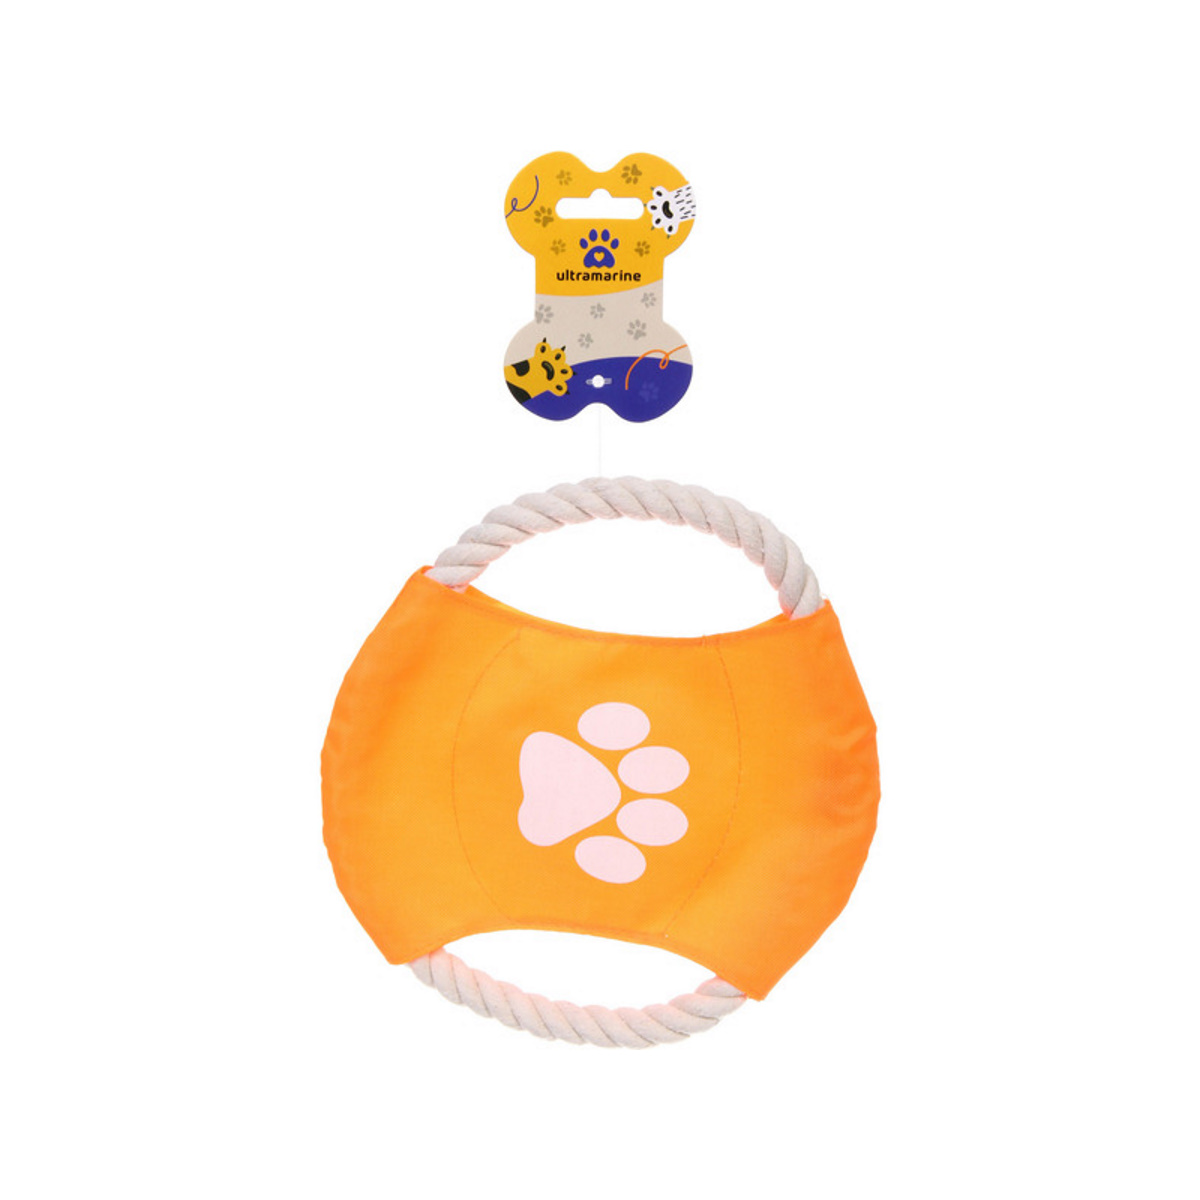 Игрушка для собак UltraMarine, оранжевая, текстиль, диаметр 18 см